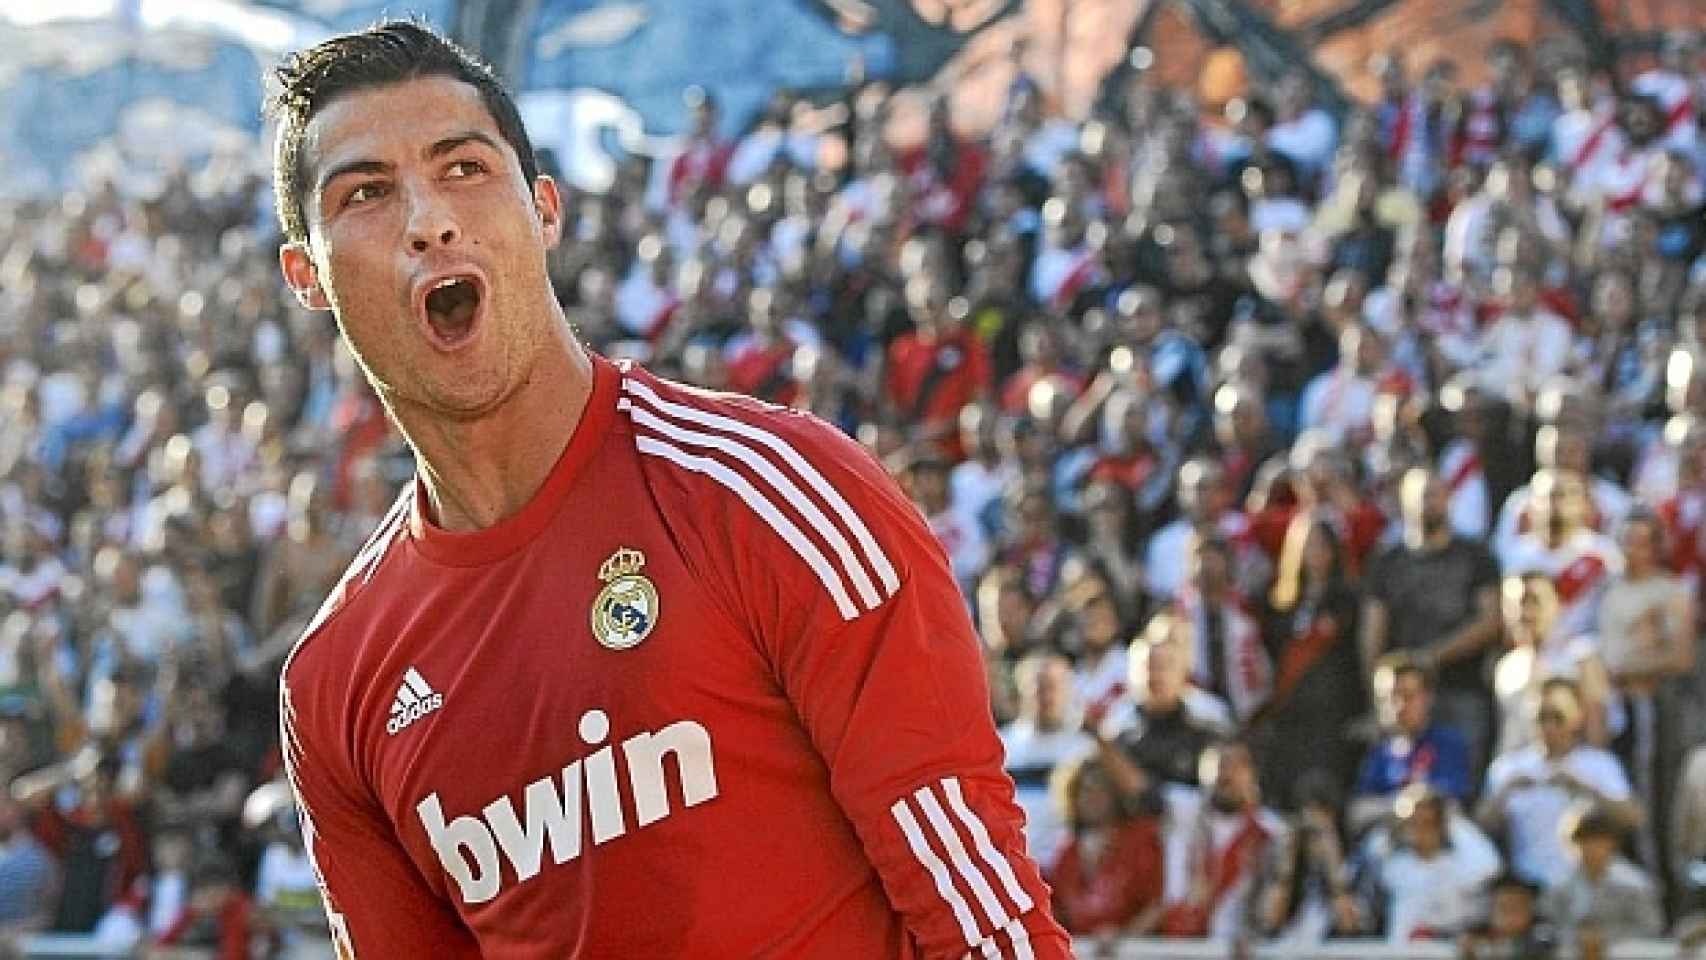 Cristiano Ronaldo luce la equipación roja.